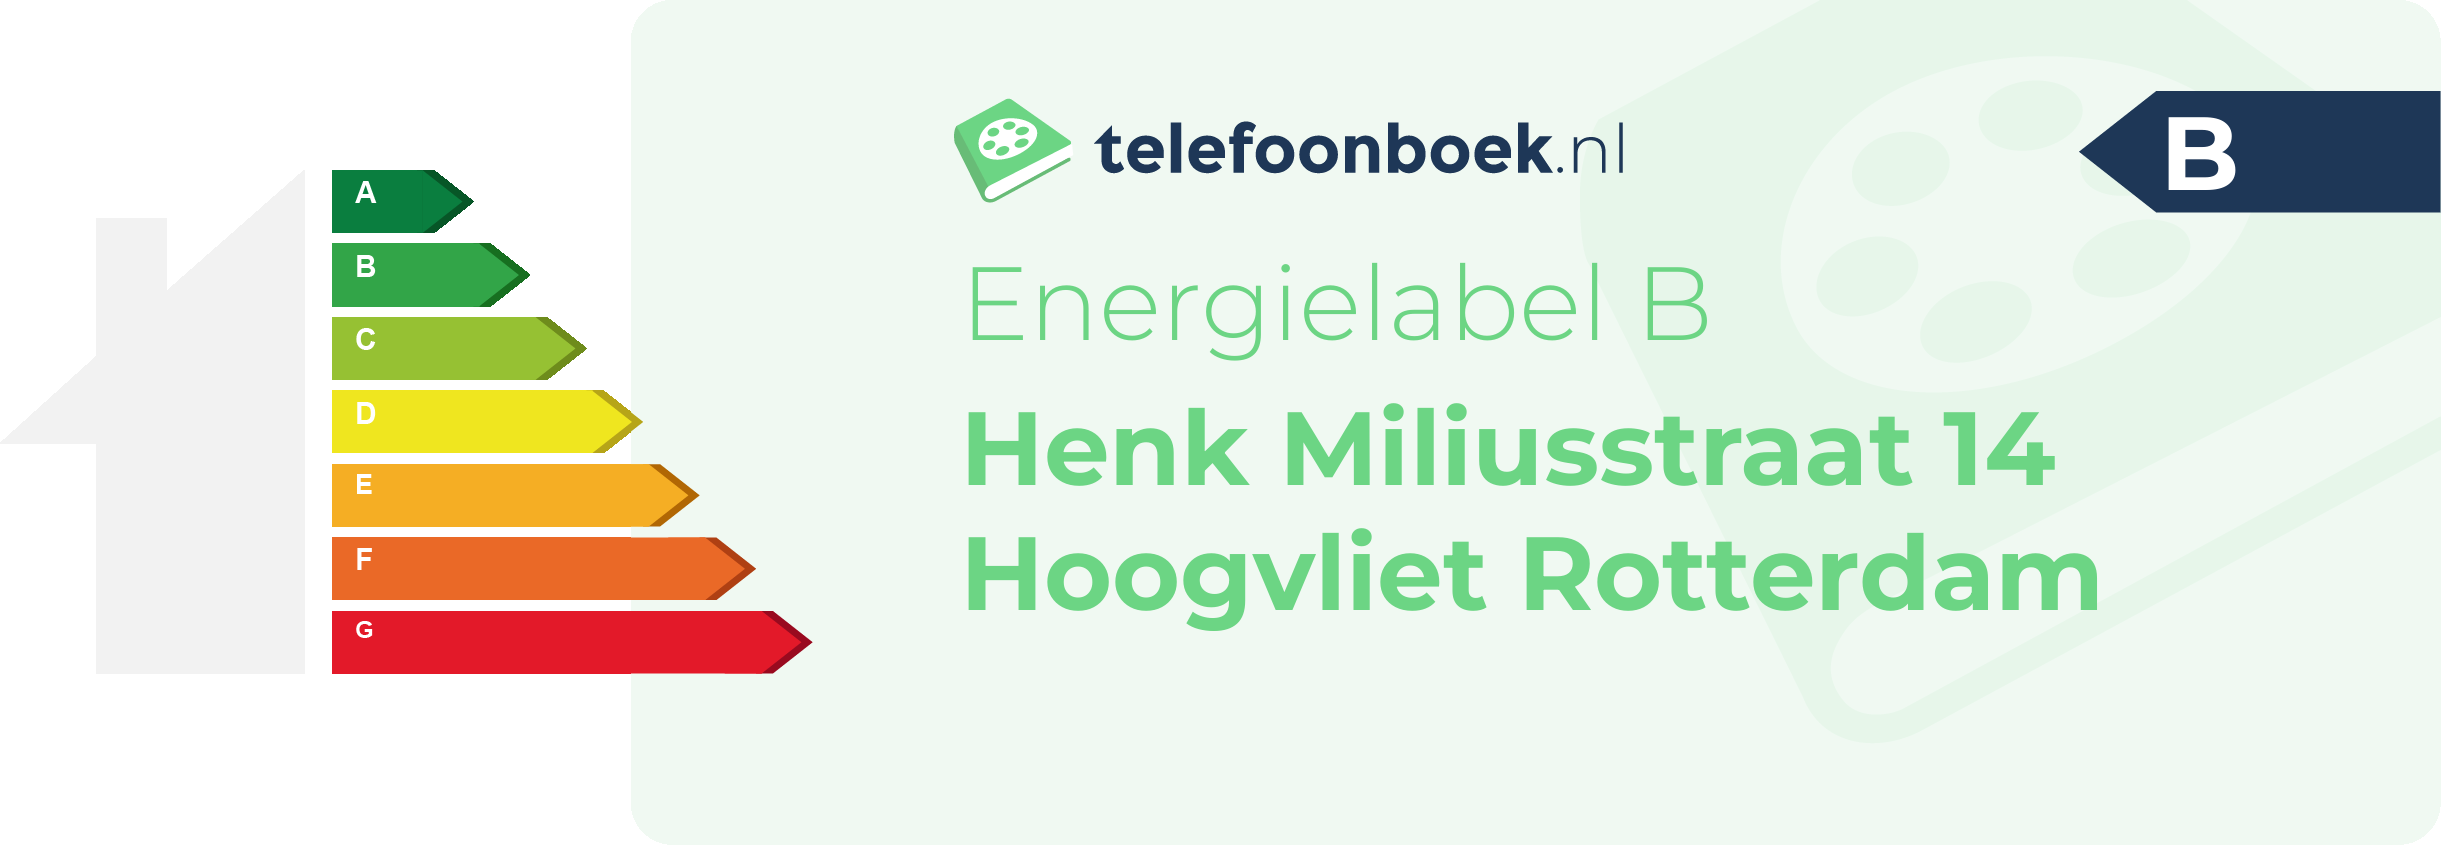 Energielabel Henk Miliusstraat 14 Hoogvliet Rotterdam